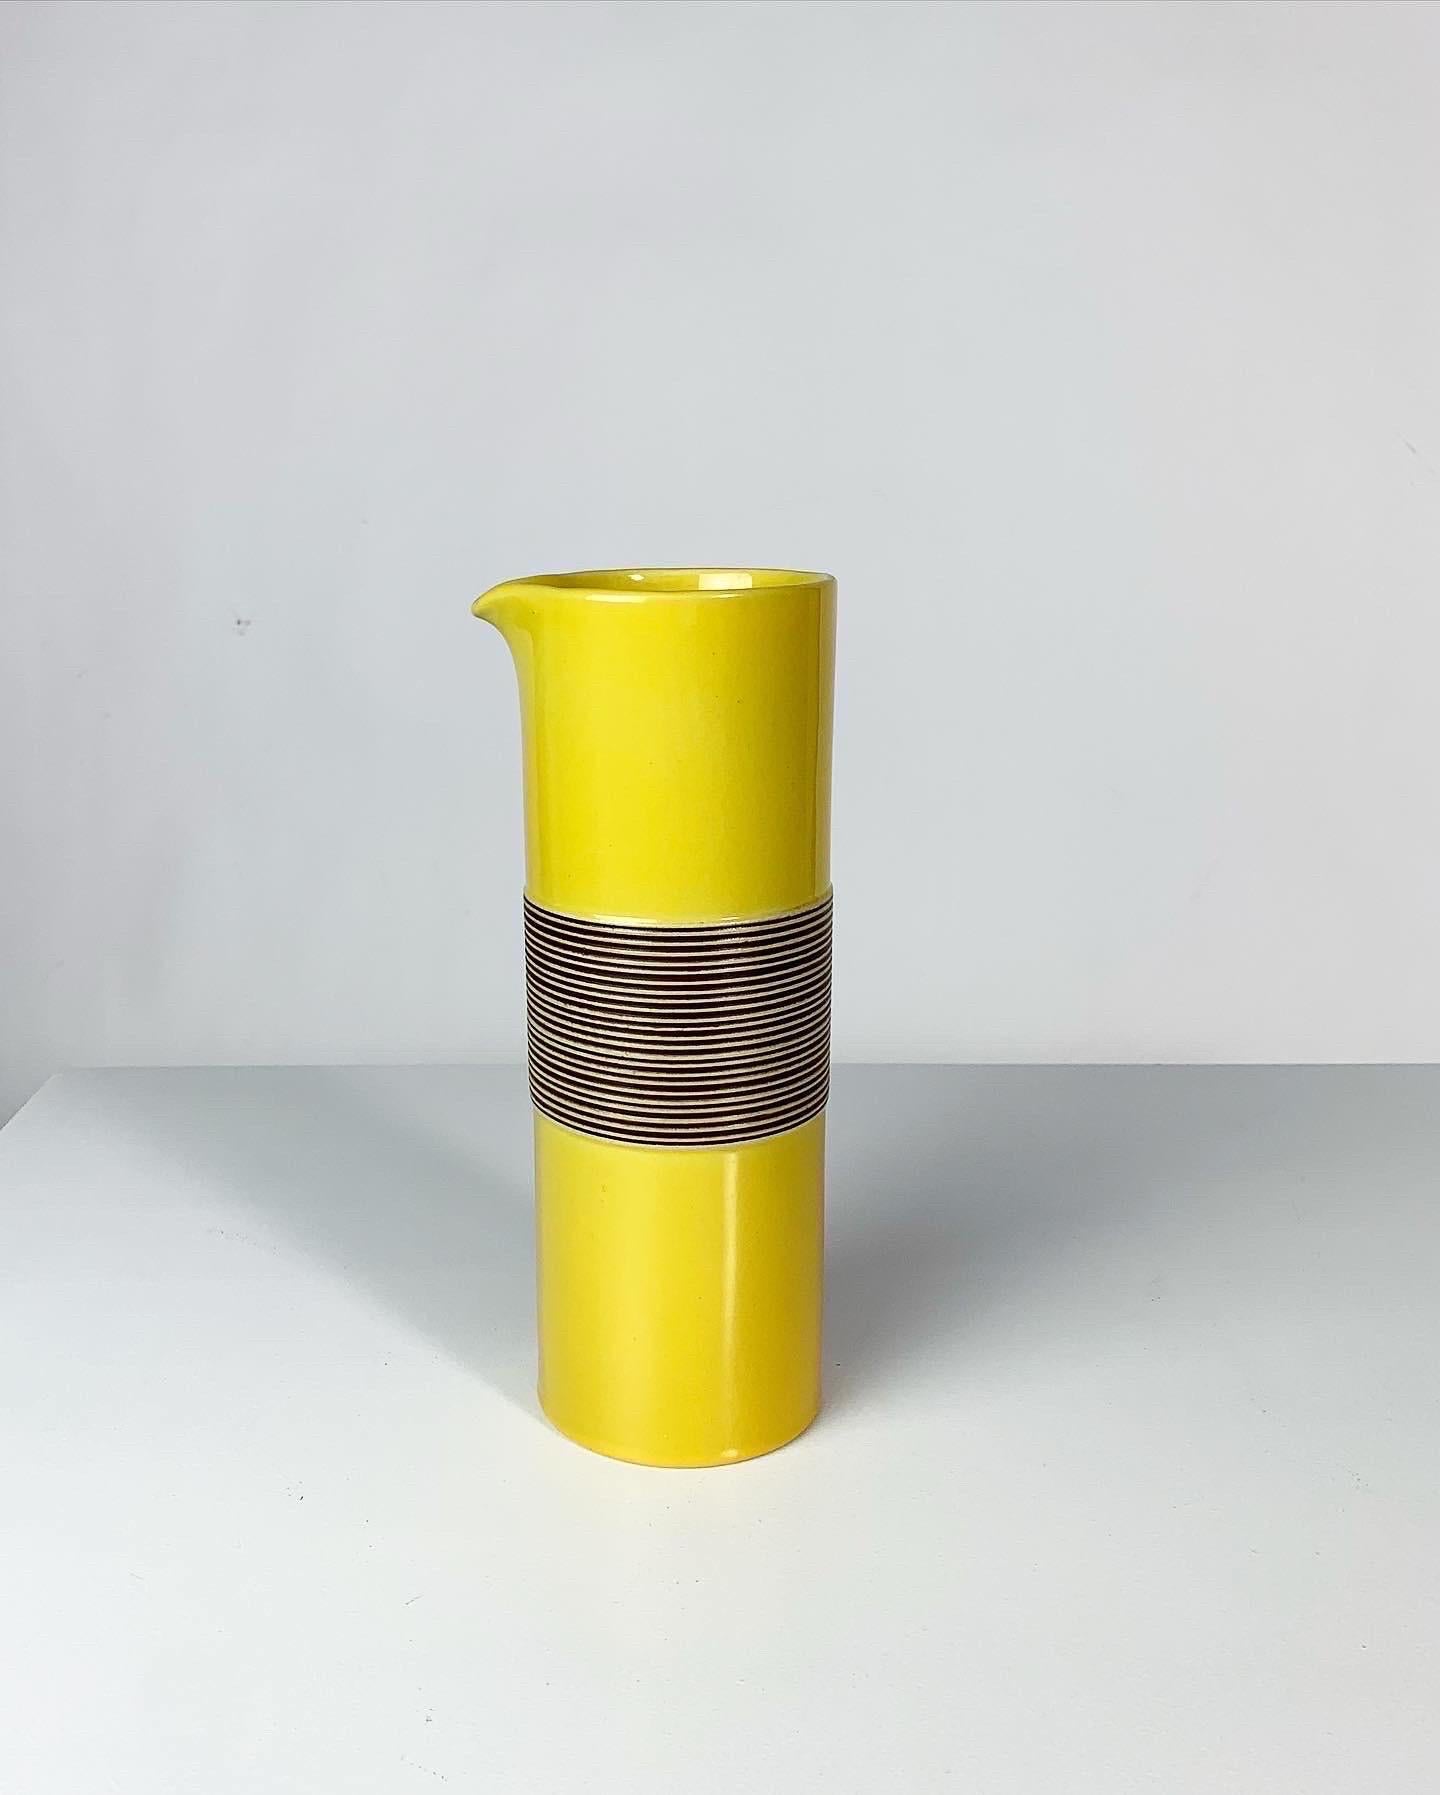 Hand-Crafted Carl Harry Stalhane Vase or Jug Entre Series Rörstrand Sweden, 1950s